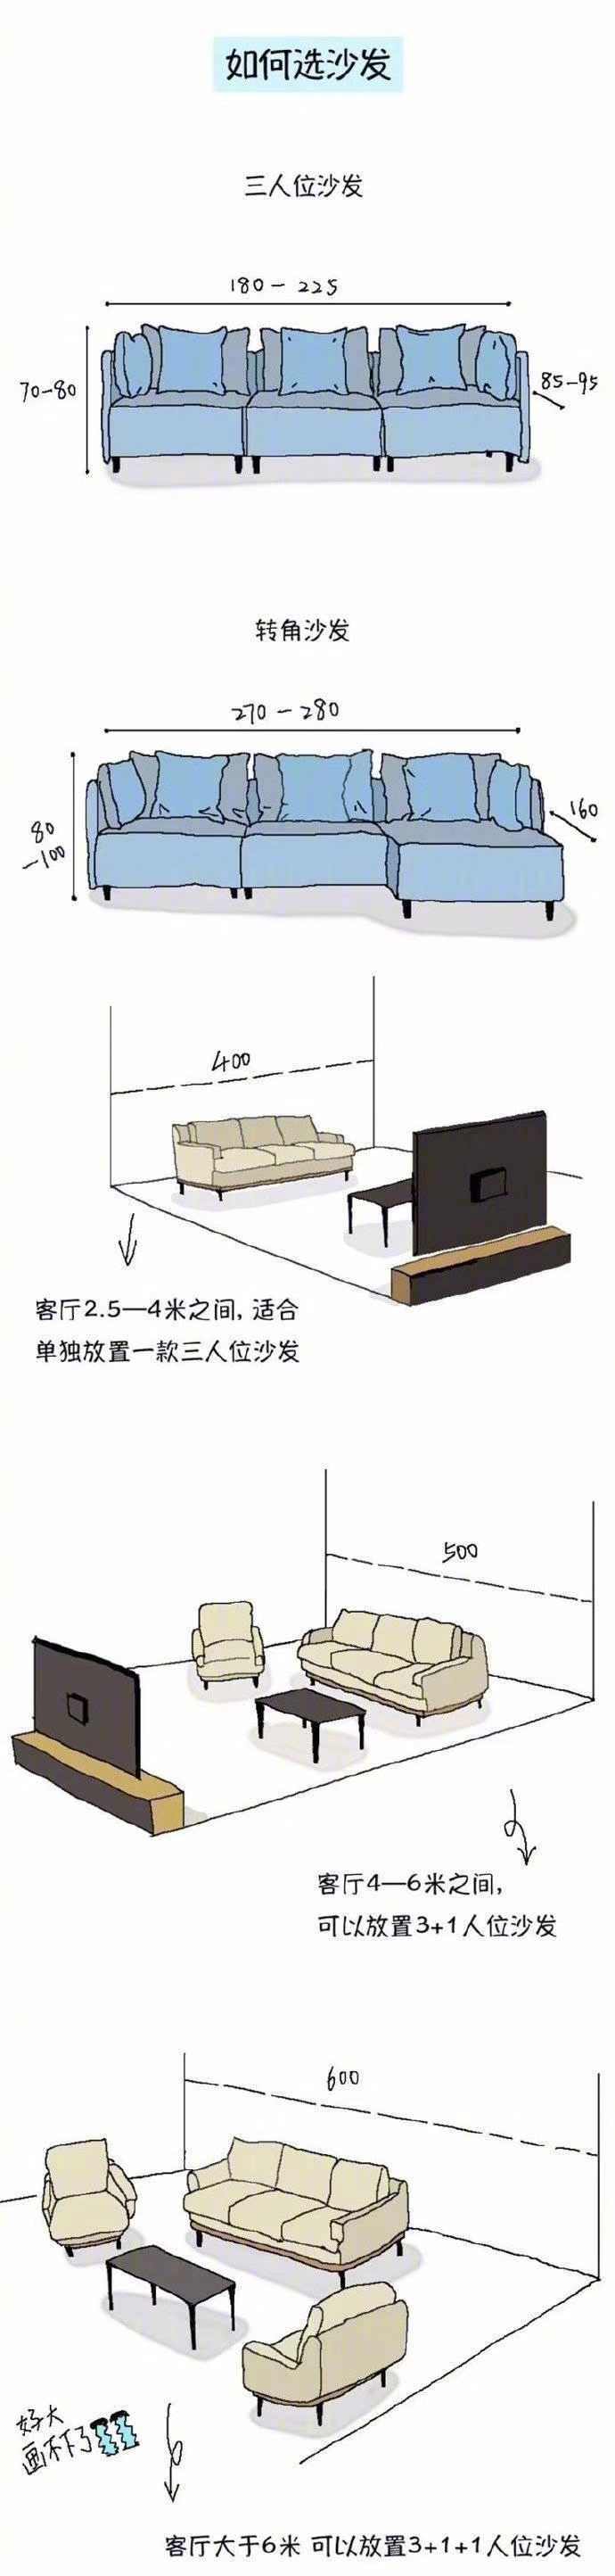 如何选择沙发尺寸